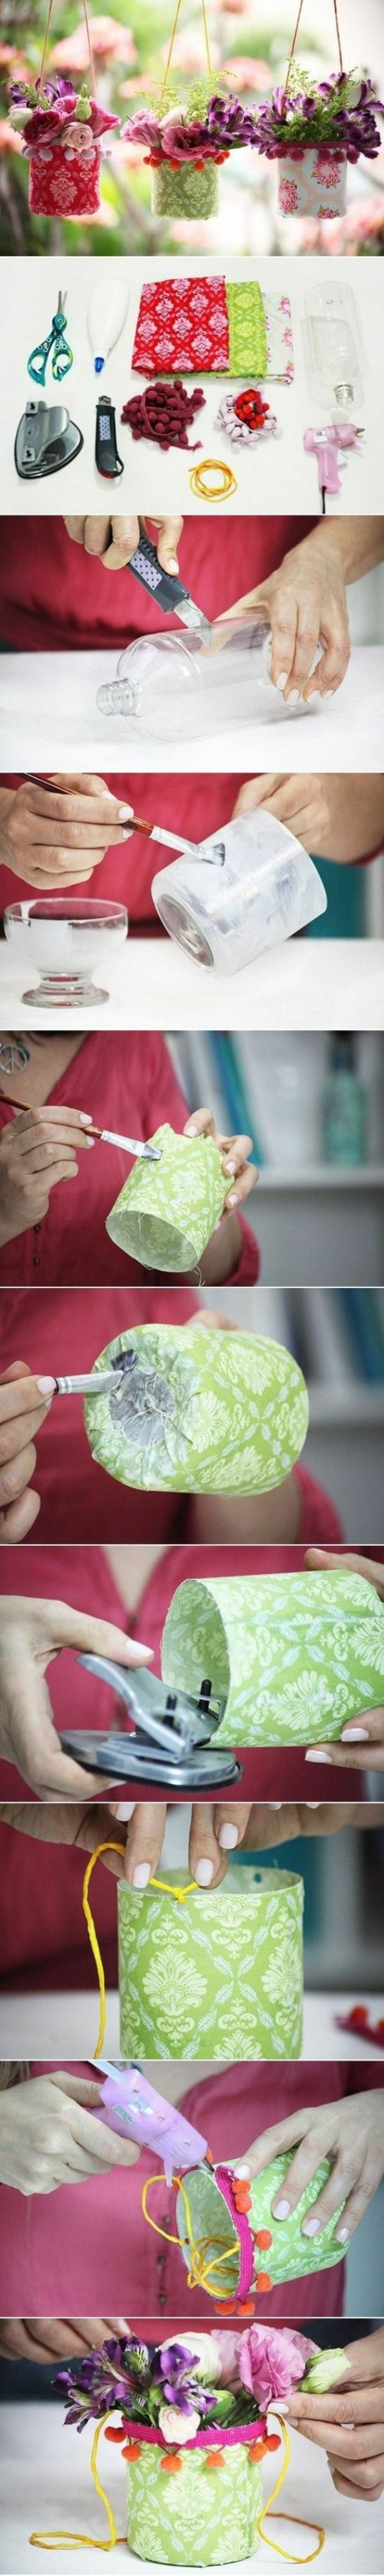 activité manuelle automne, tutoriel comment faire des suspensions florales faciles, idée recyclage bouteille plastique